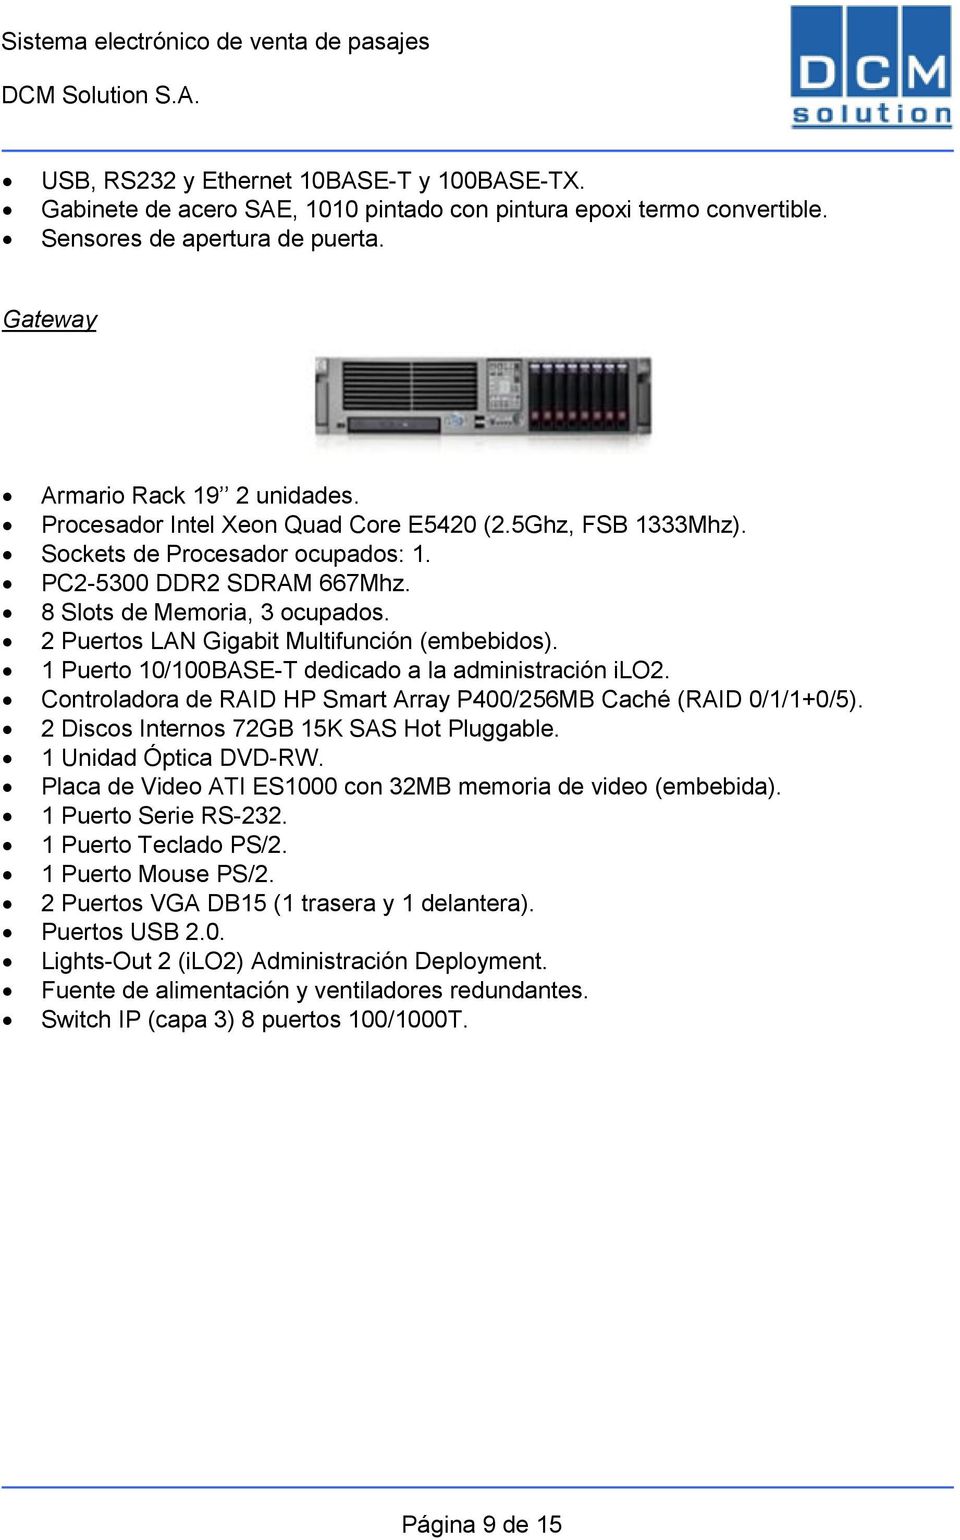 2 Puertos LAN Gigabit Multifunción (embebidos). 1 Puerto 10/100BASE-T dedicado a la administración ilo2. Controladora de RAID HP Smart Array P400/256MB Caché (RAID 0/1/1+0/5).